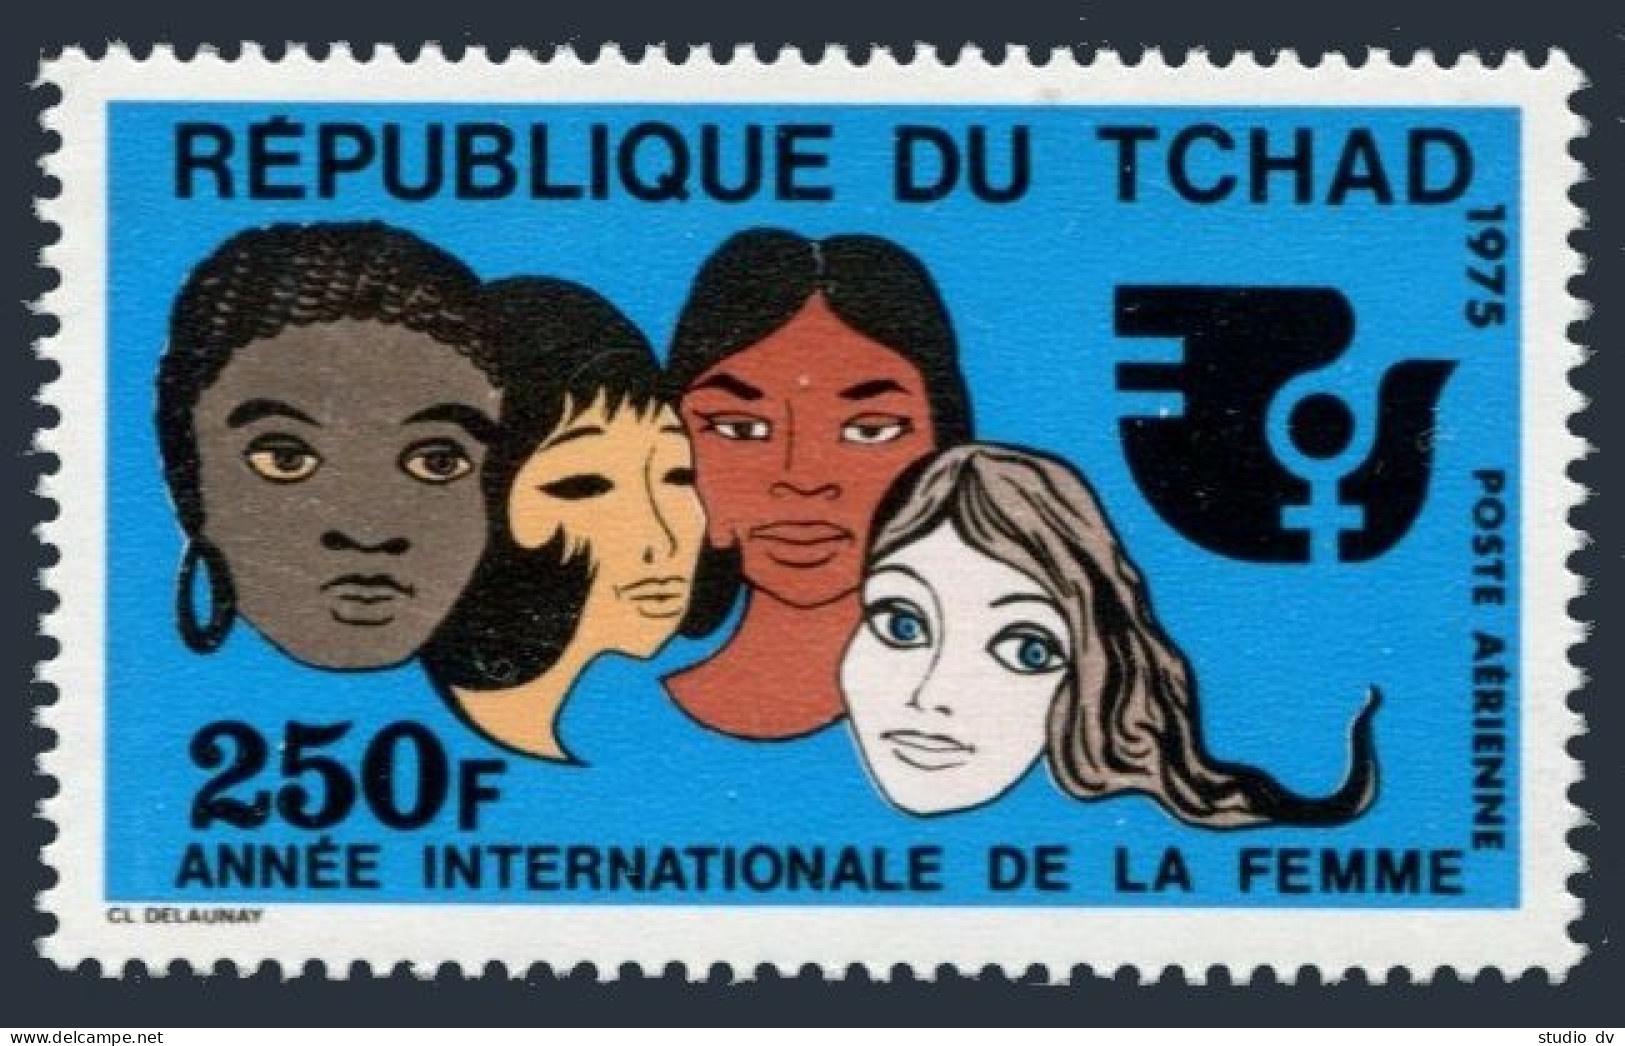 Chad C165,MNH.Michel 709. International Women's Year,IWY-1975 Emblem. - Tchad (1960-...)